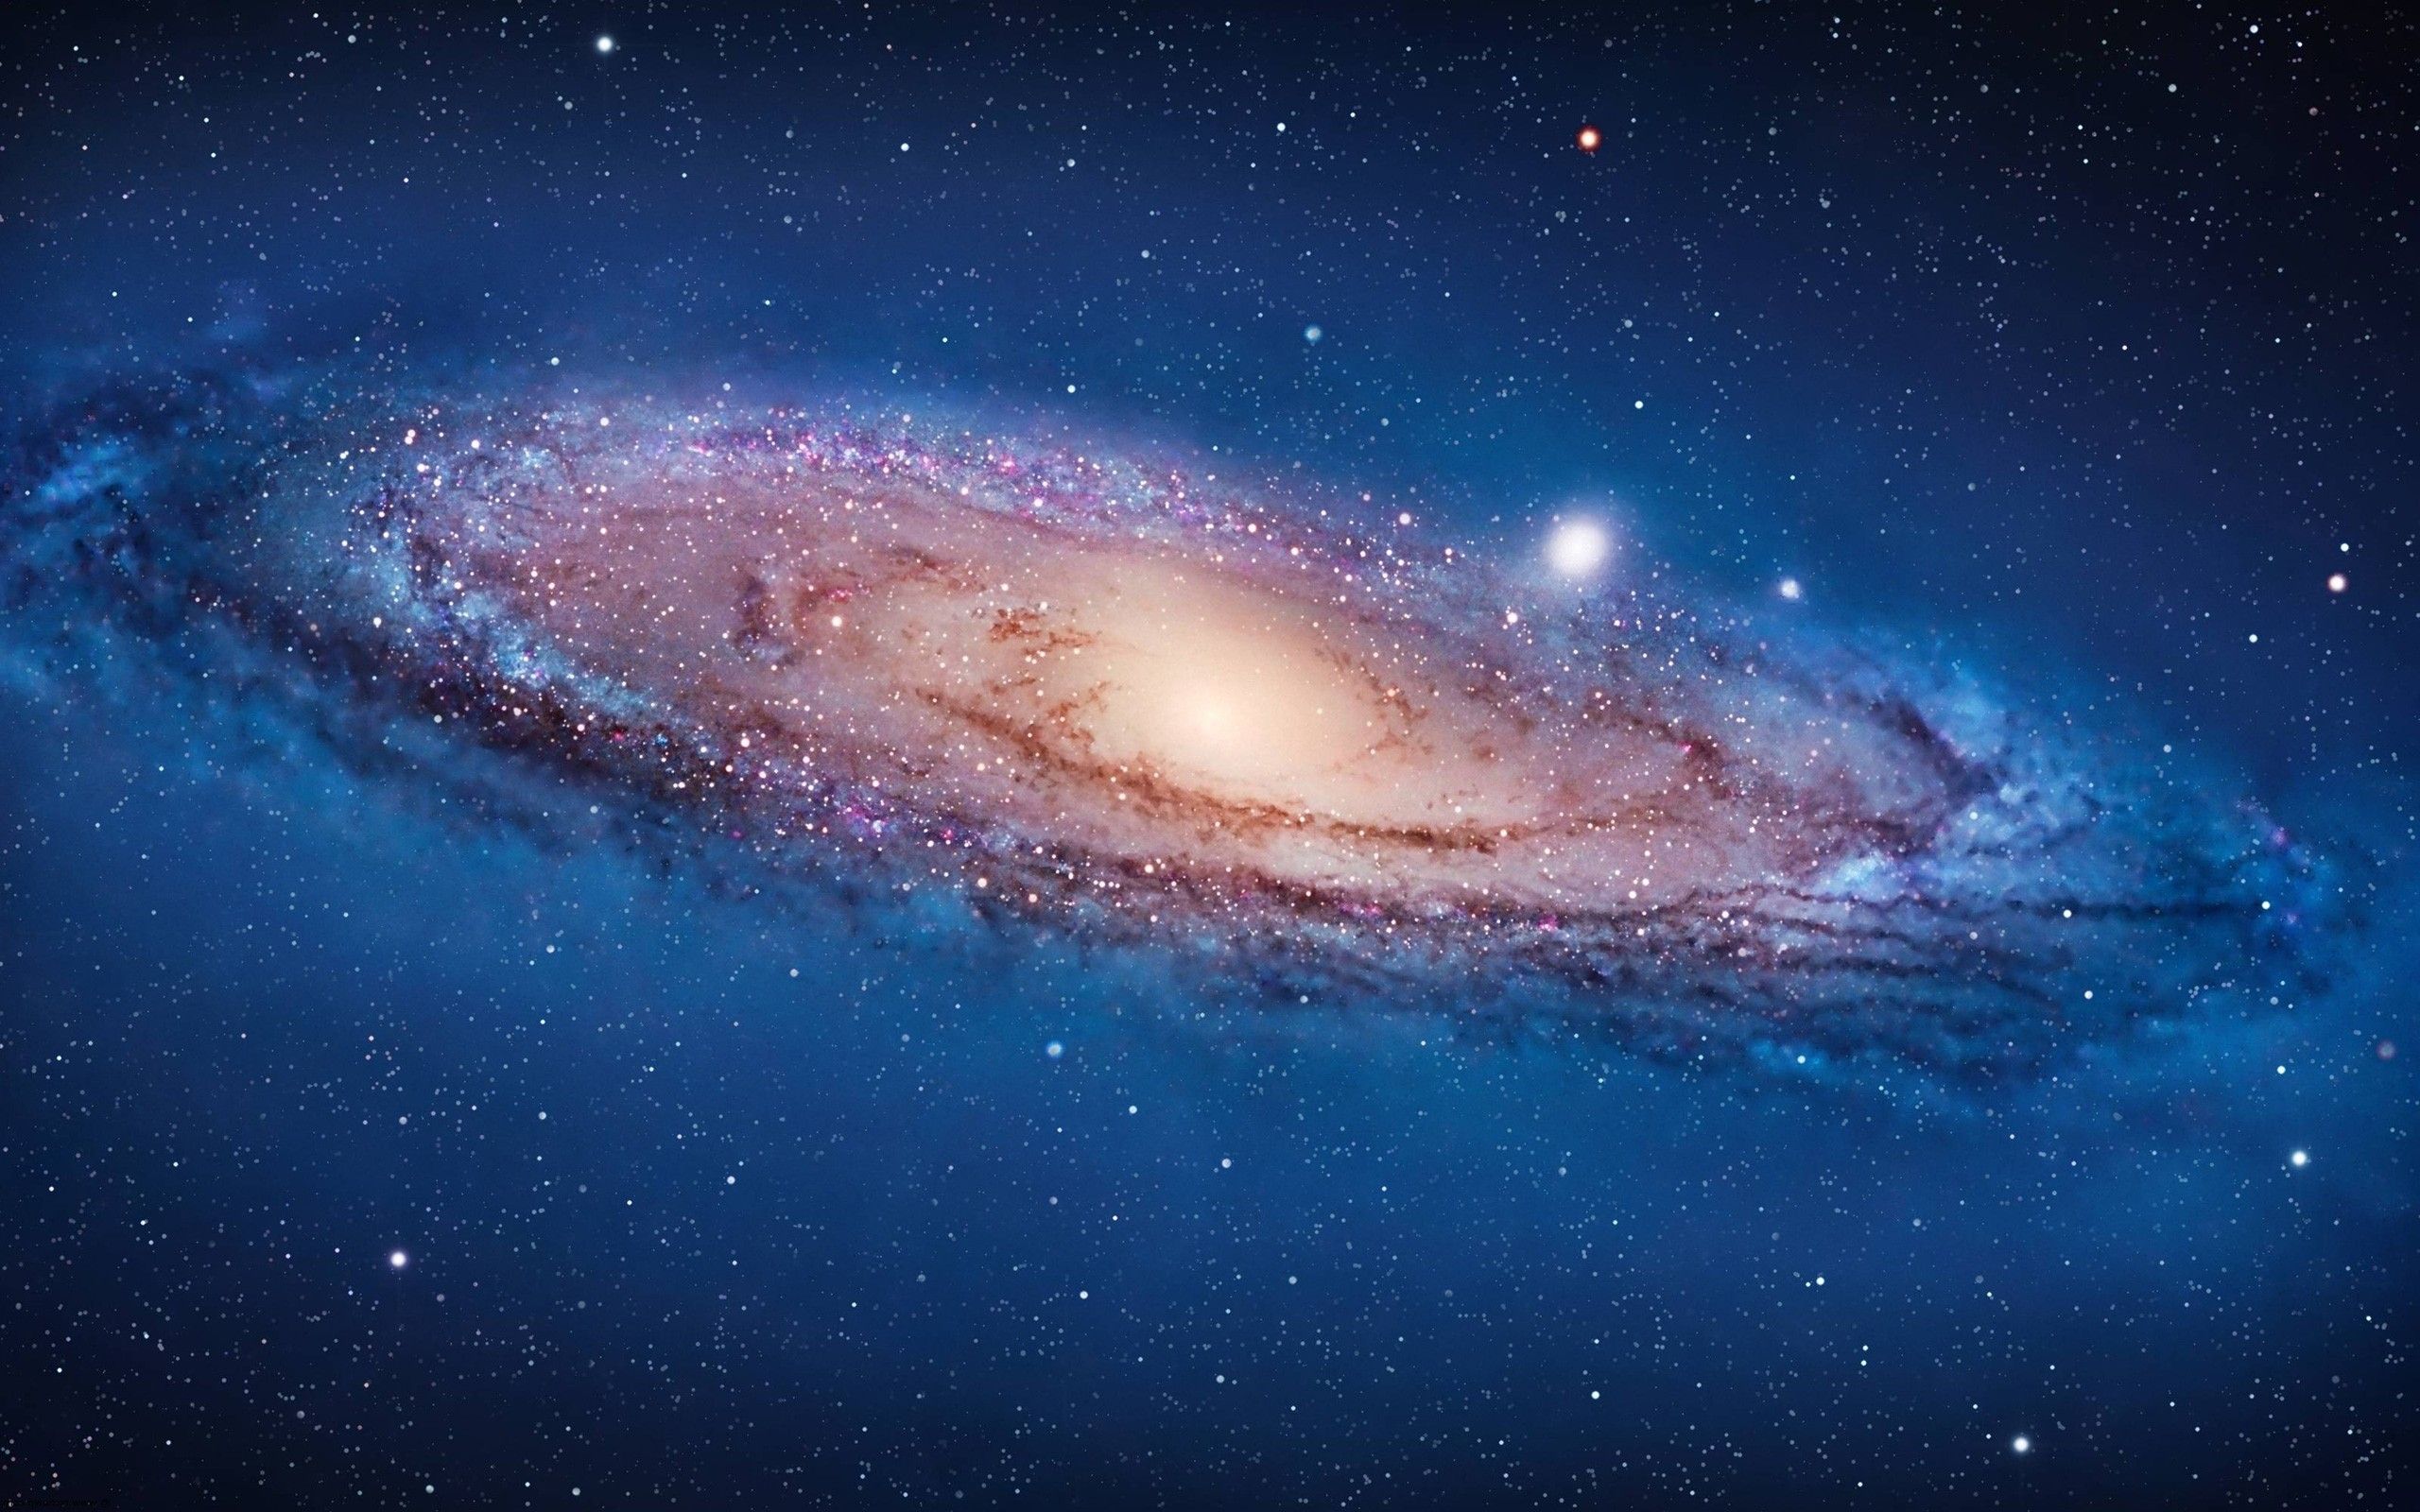  Coole PC Hintergrundbild 2560x1600. Coole Galaxie Tapete. Hintergründe. Fotos. Bilder